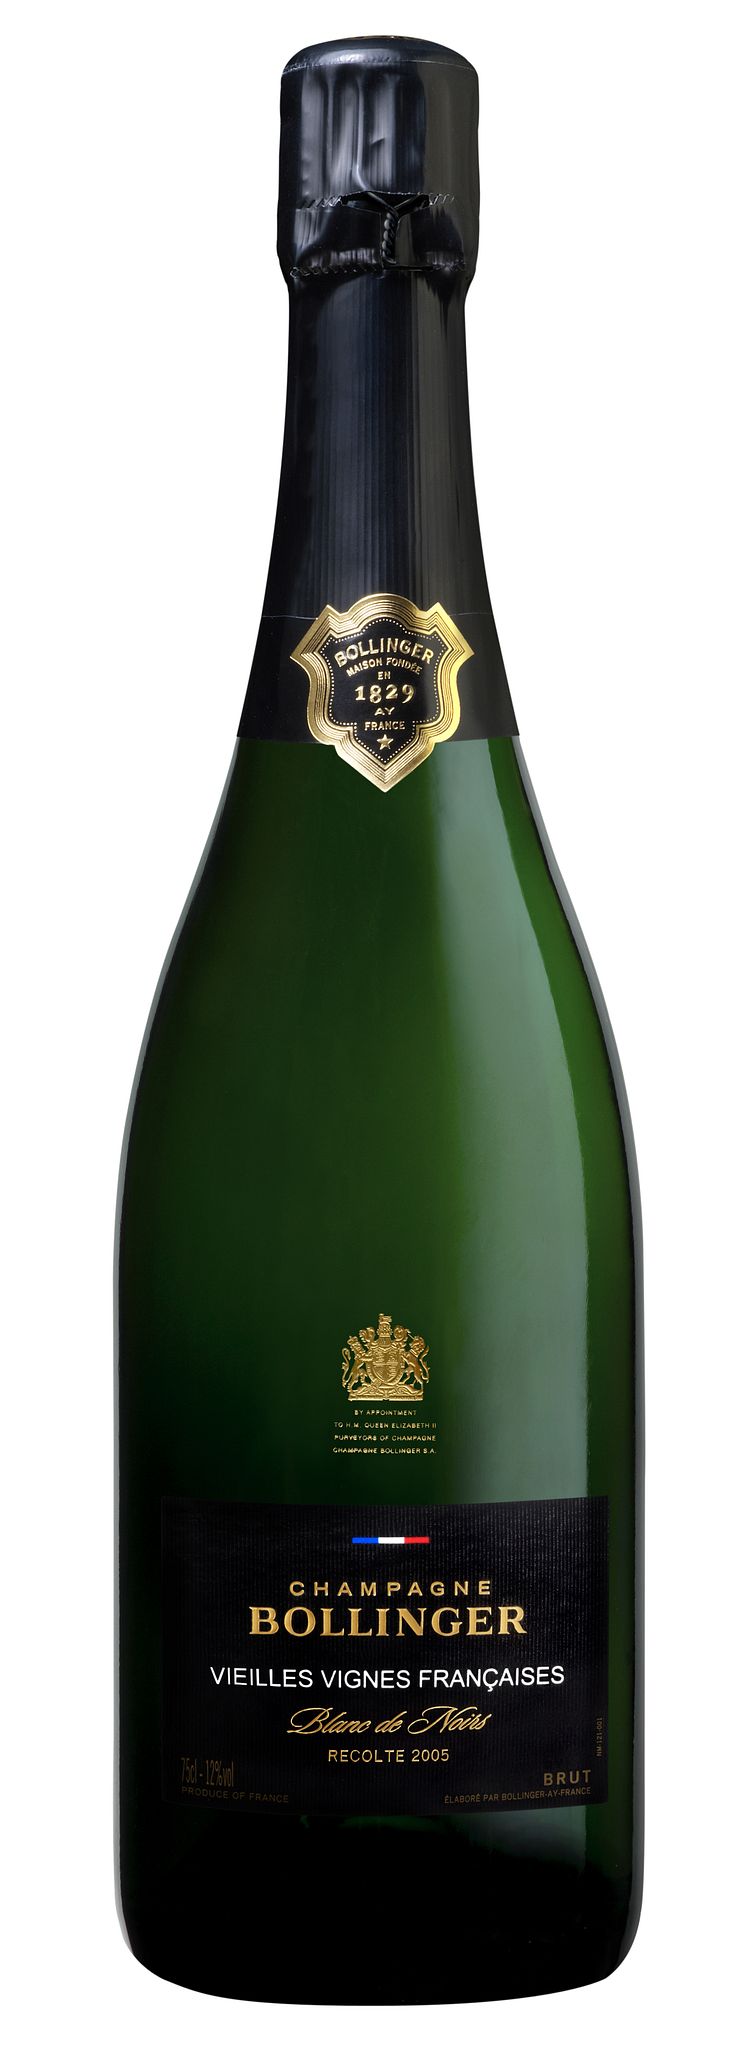 Bollinger Vieilles Vignes Françaises 2005 bottle